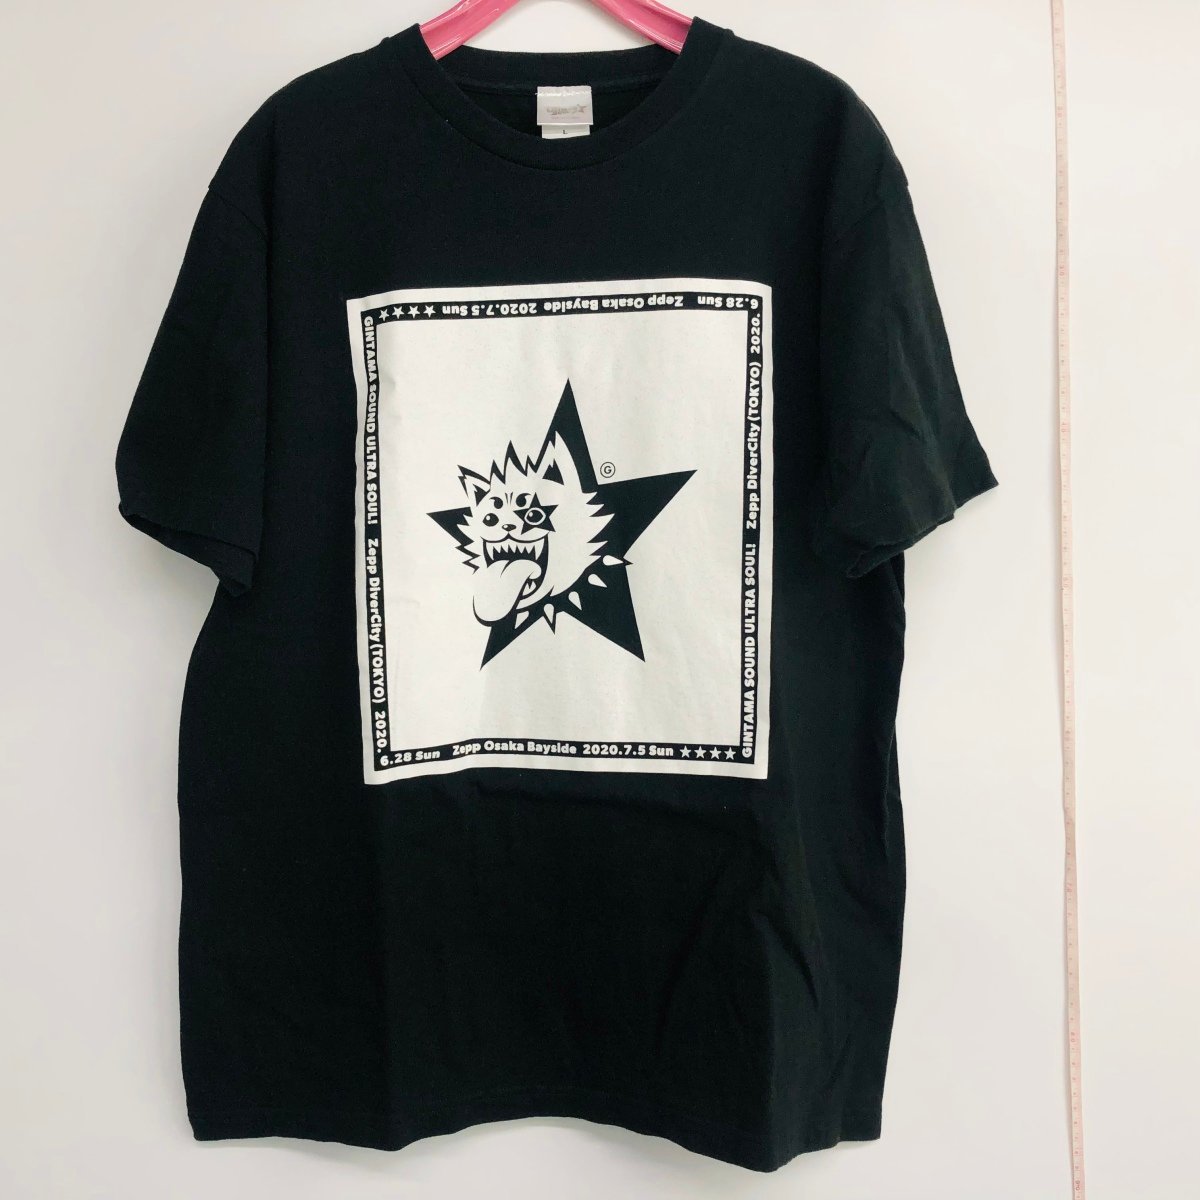 中古品 銀魂 SOUND ULTRA SOUL! イベントロゴ Tシャツ ブラック Lサイズの画像1